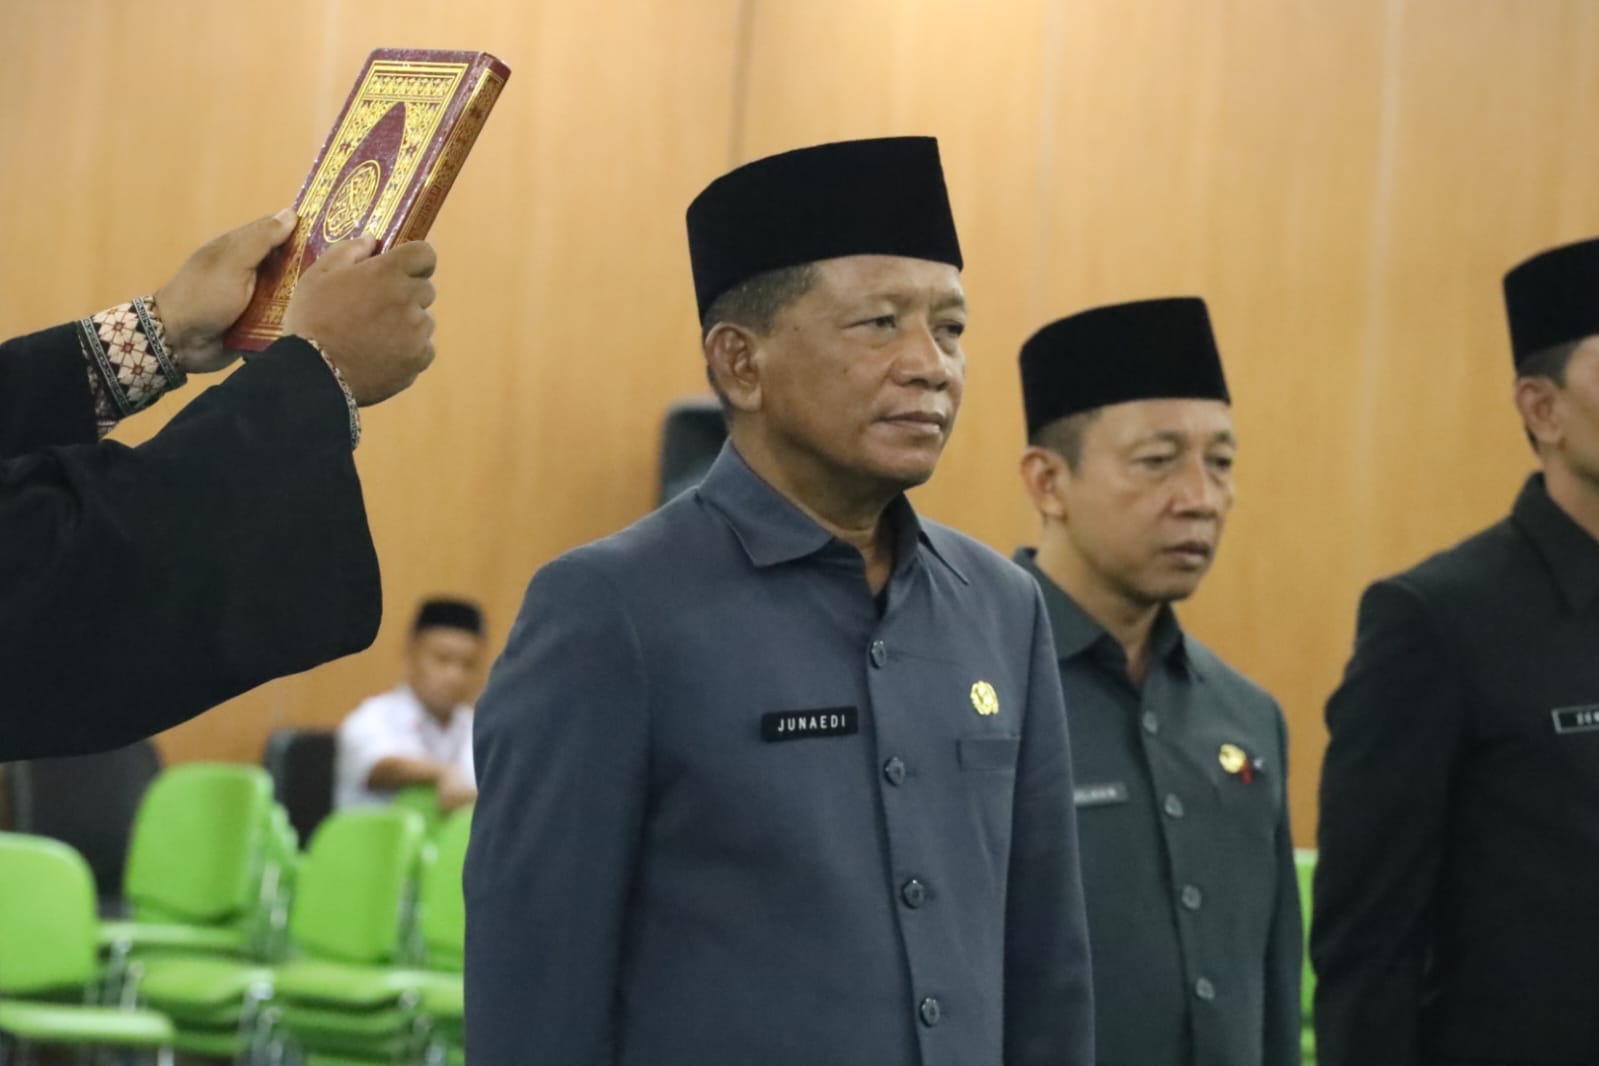 Drs. Junaedi Resmi Sekretaris Daerah Kota Bekasi